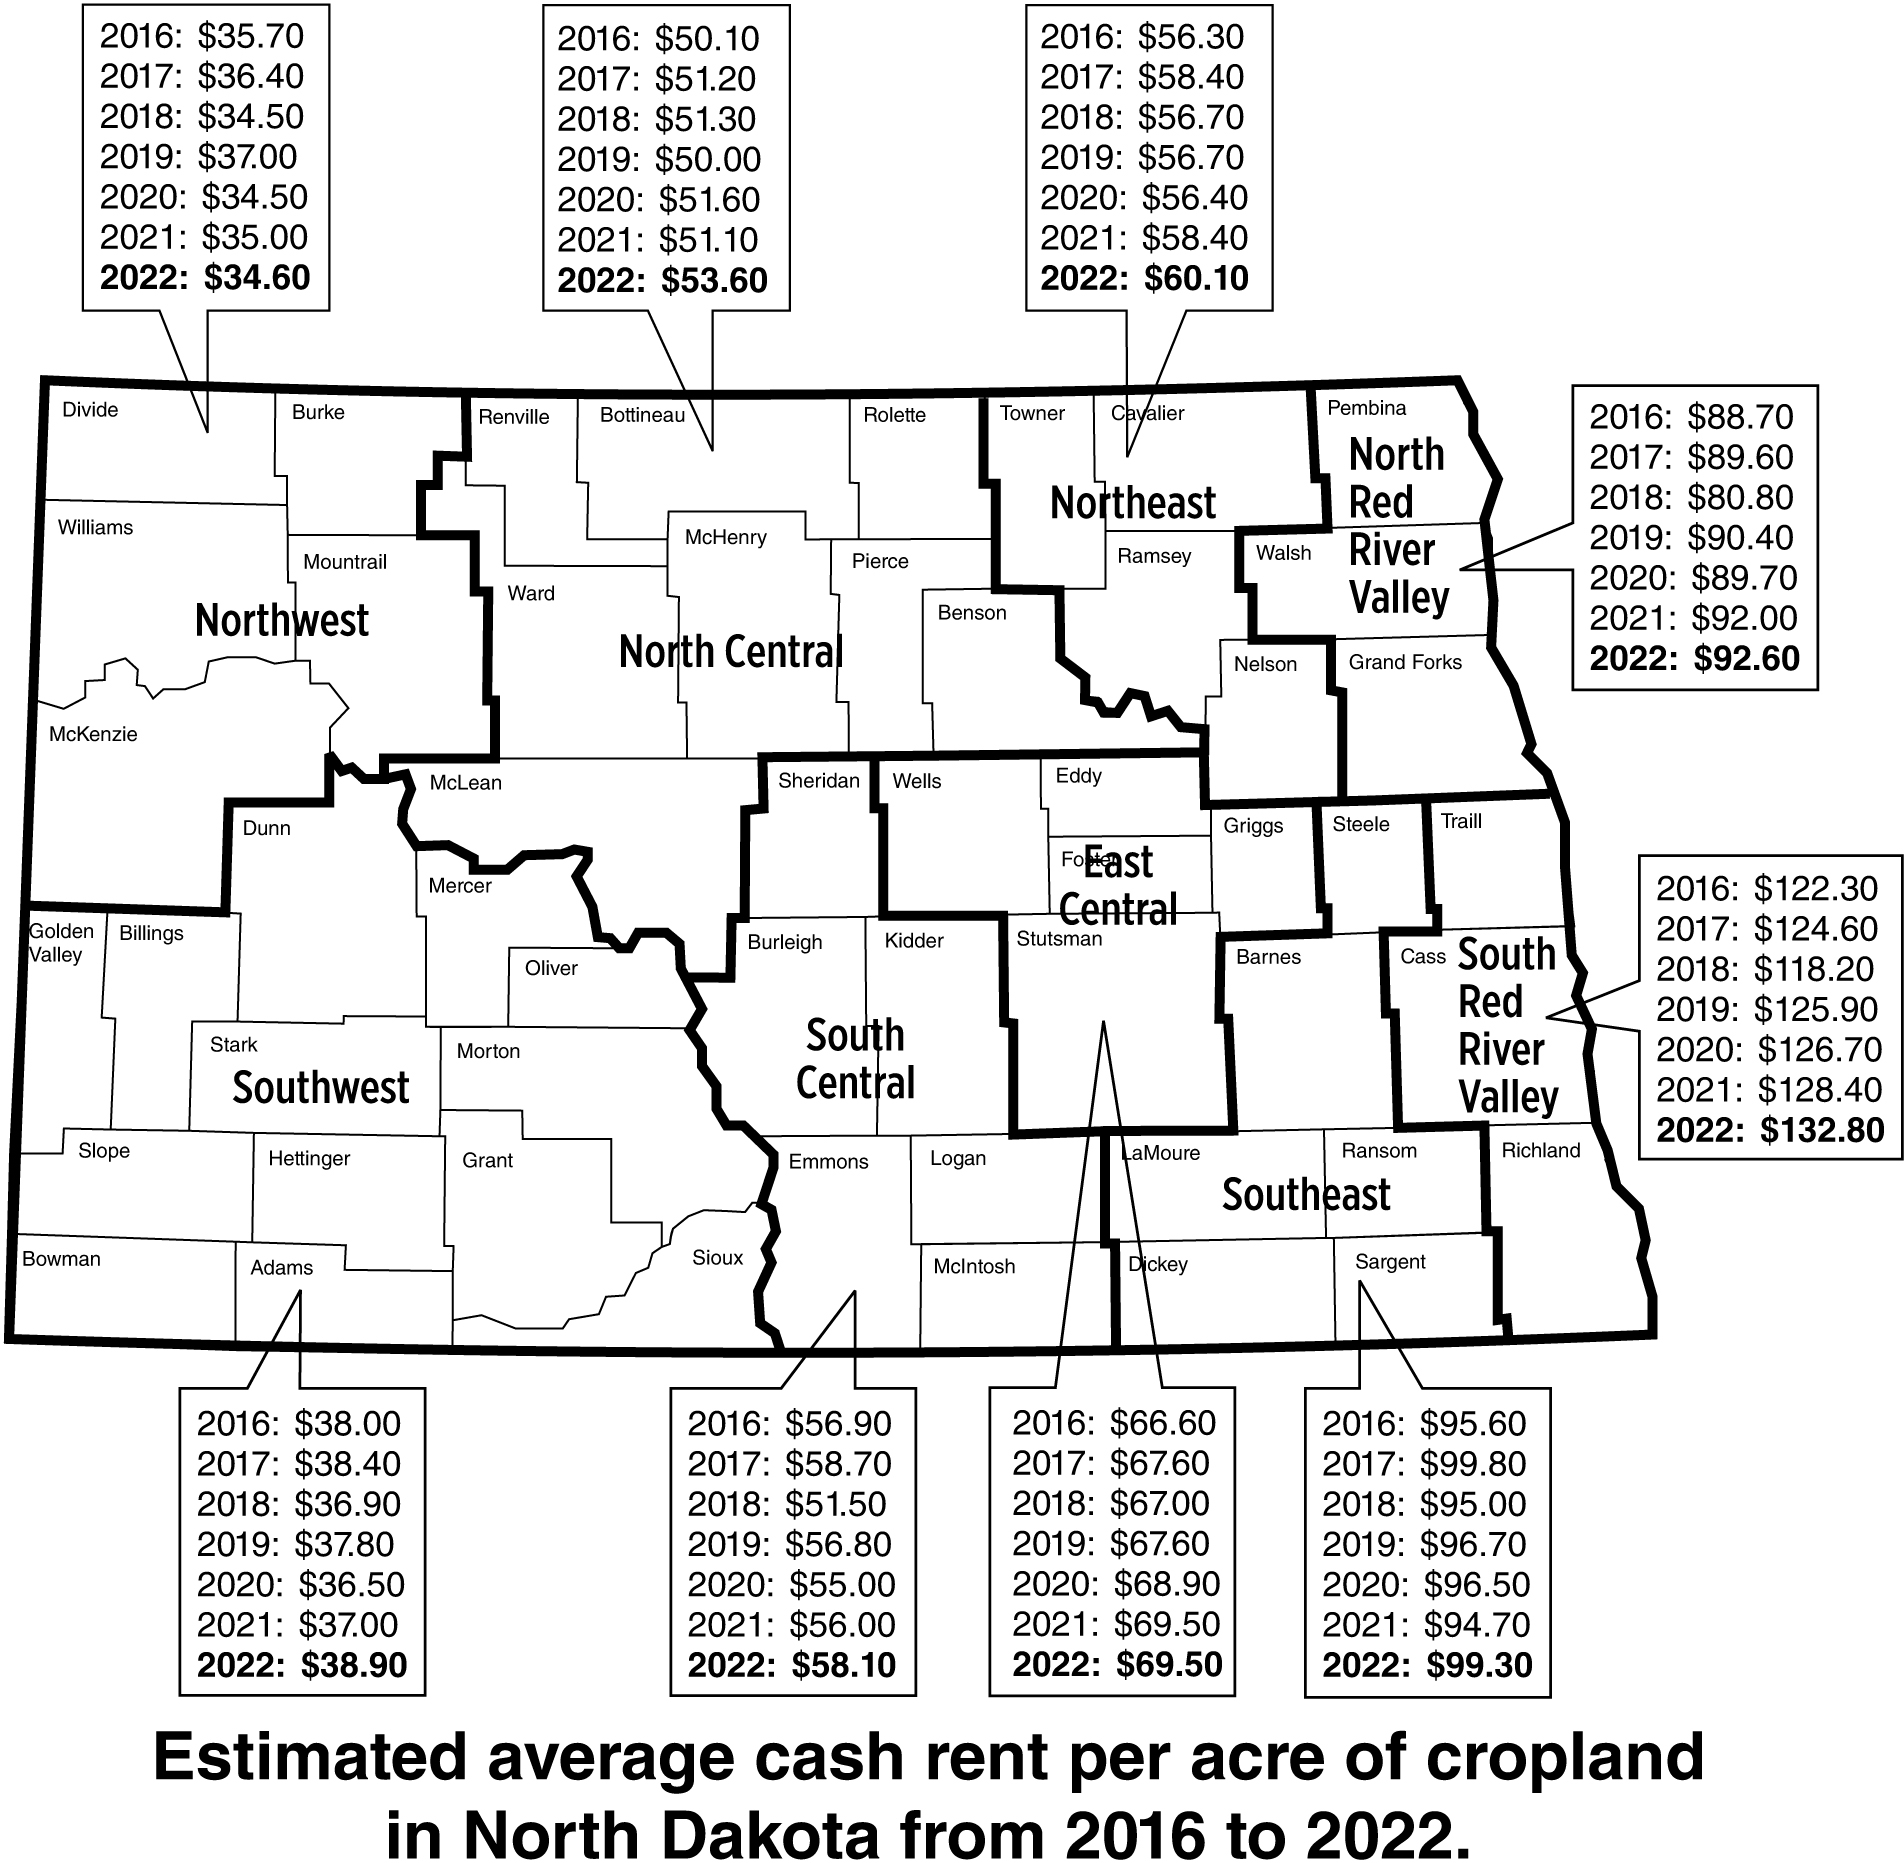 Estimated Average Cropland Cash Rent